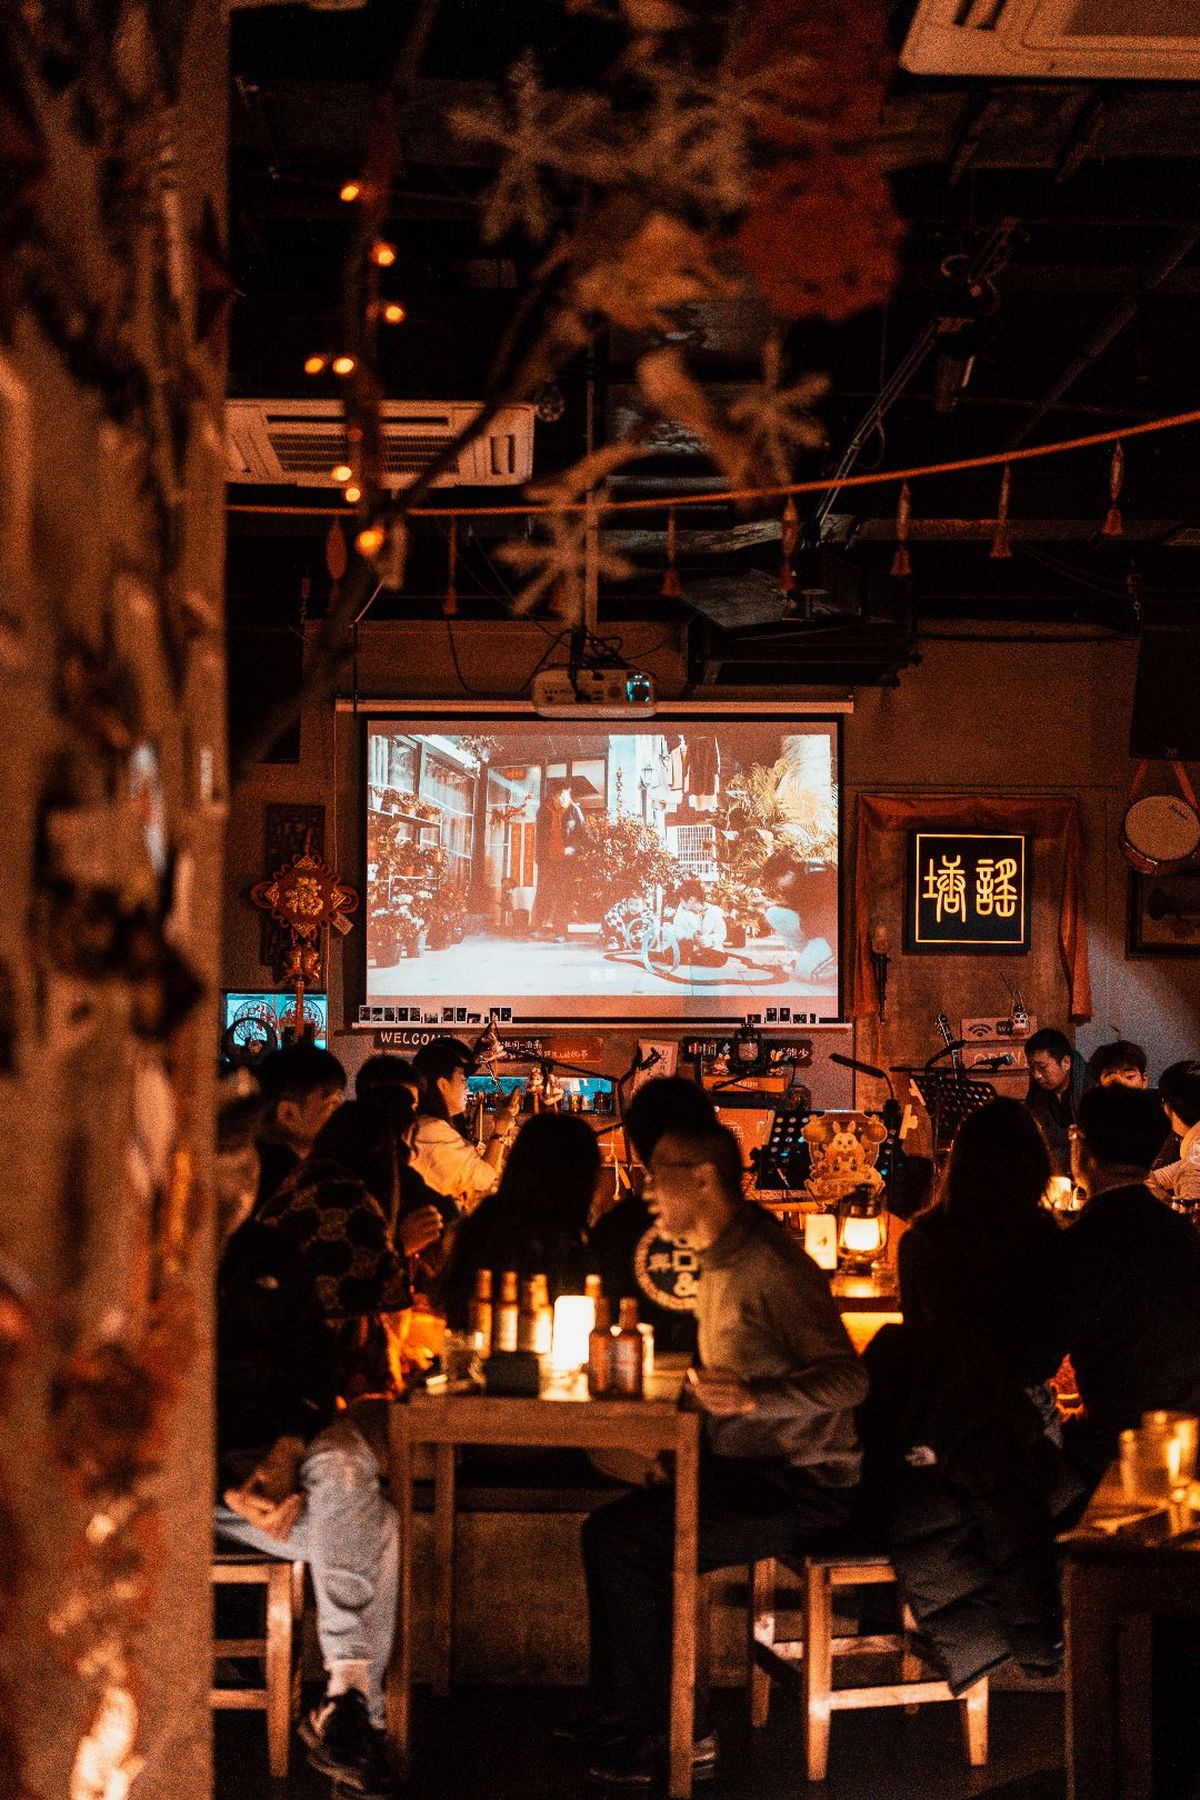 人们在餐厅的桌子旁观看一部大型电视上的电影。